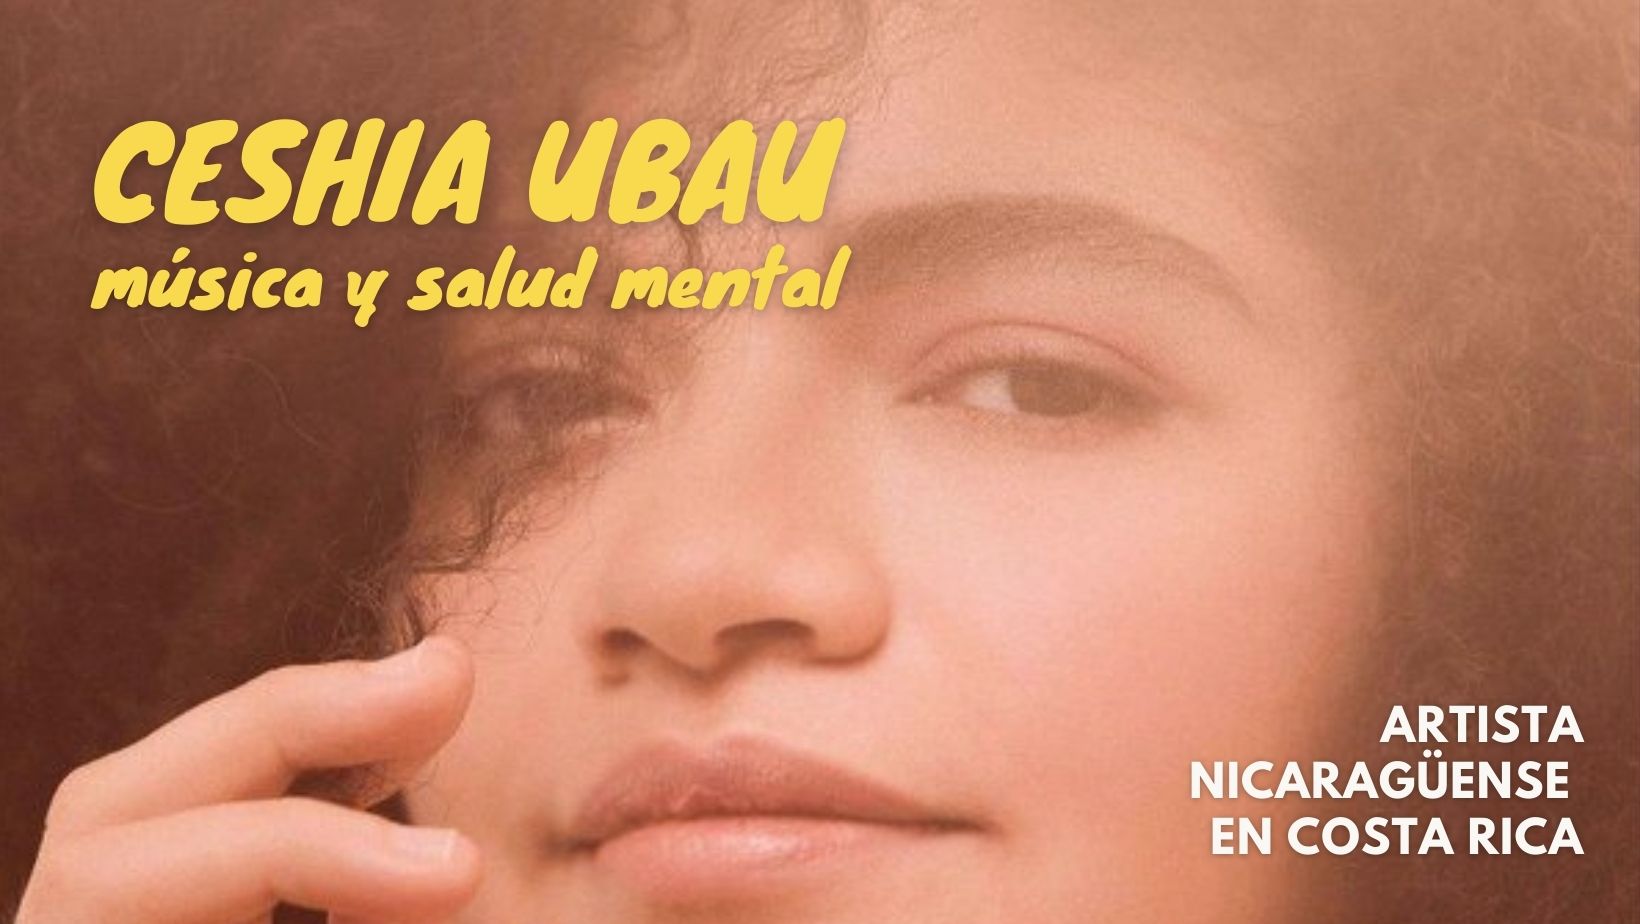 Ceshia Ubau, artista nicaragüense llevando su música por el mundo.   